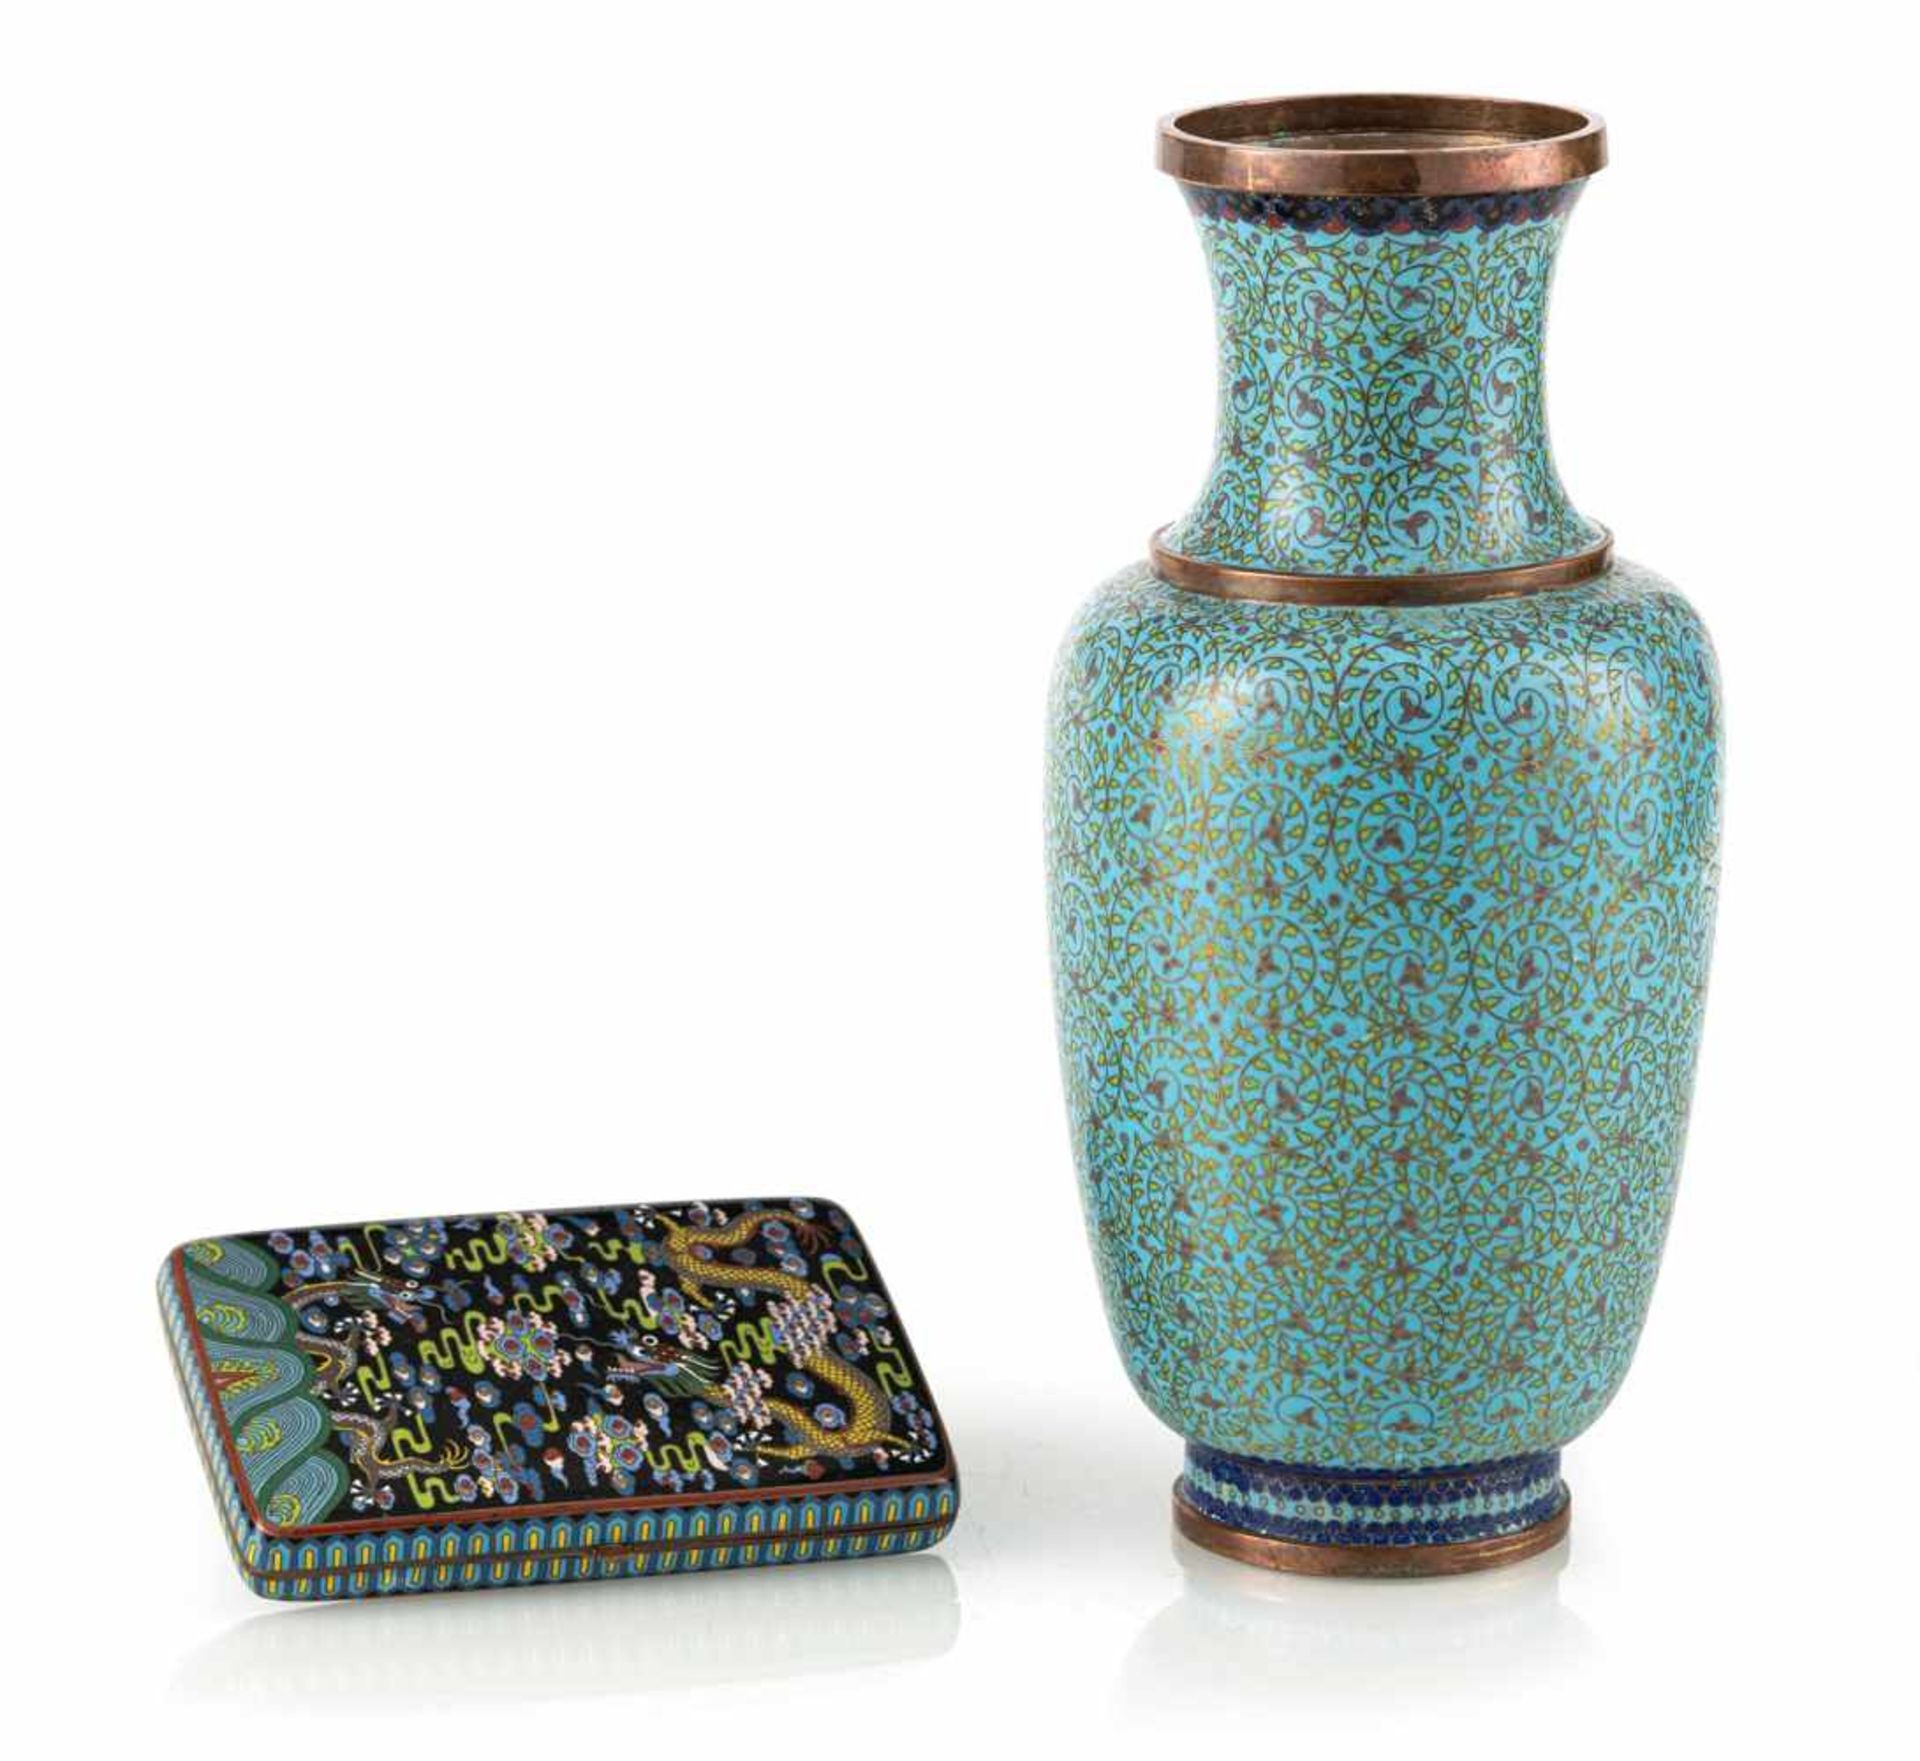 Cloisonné-Etui mit Drachendekor und Cloisonné-Vase mit Spiralranken